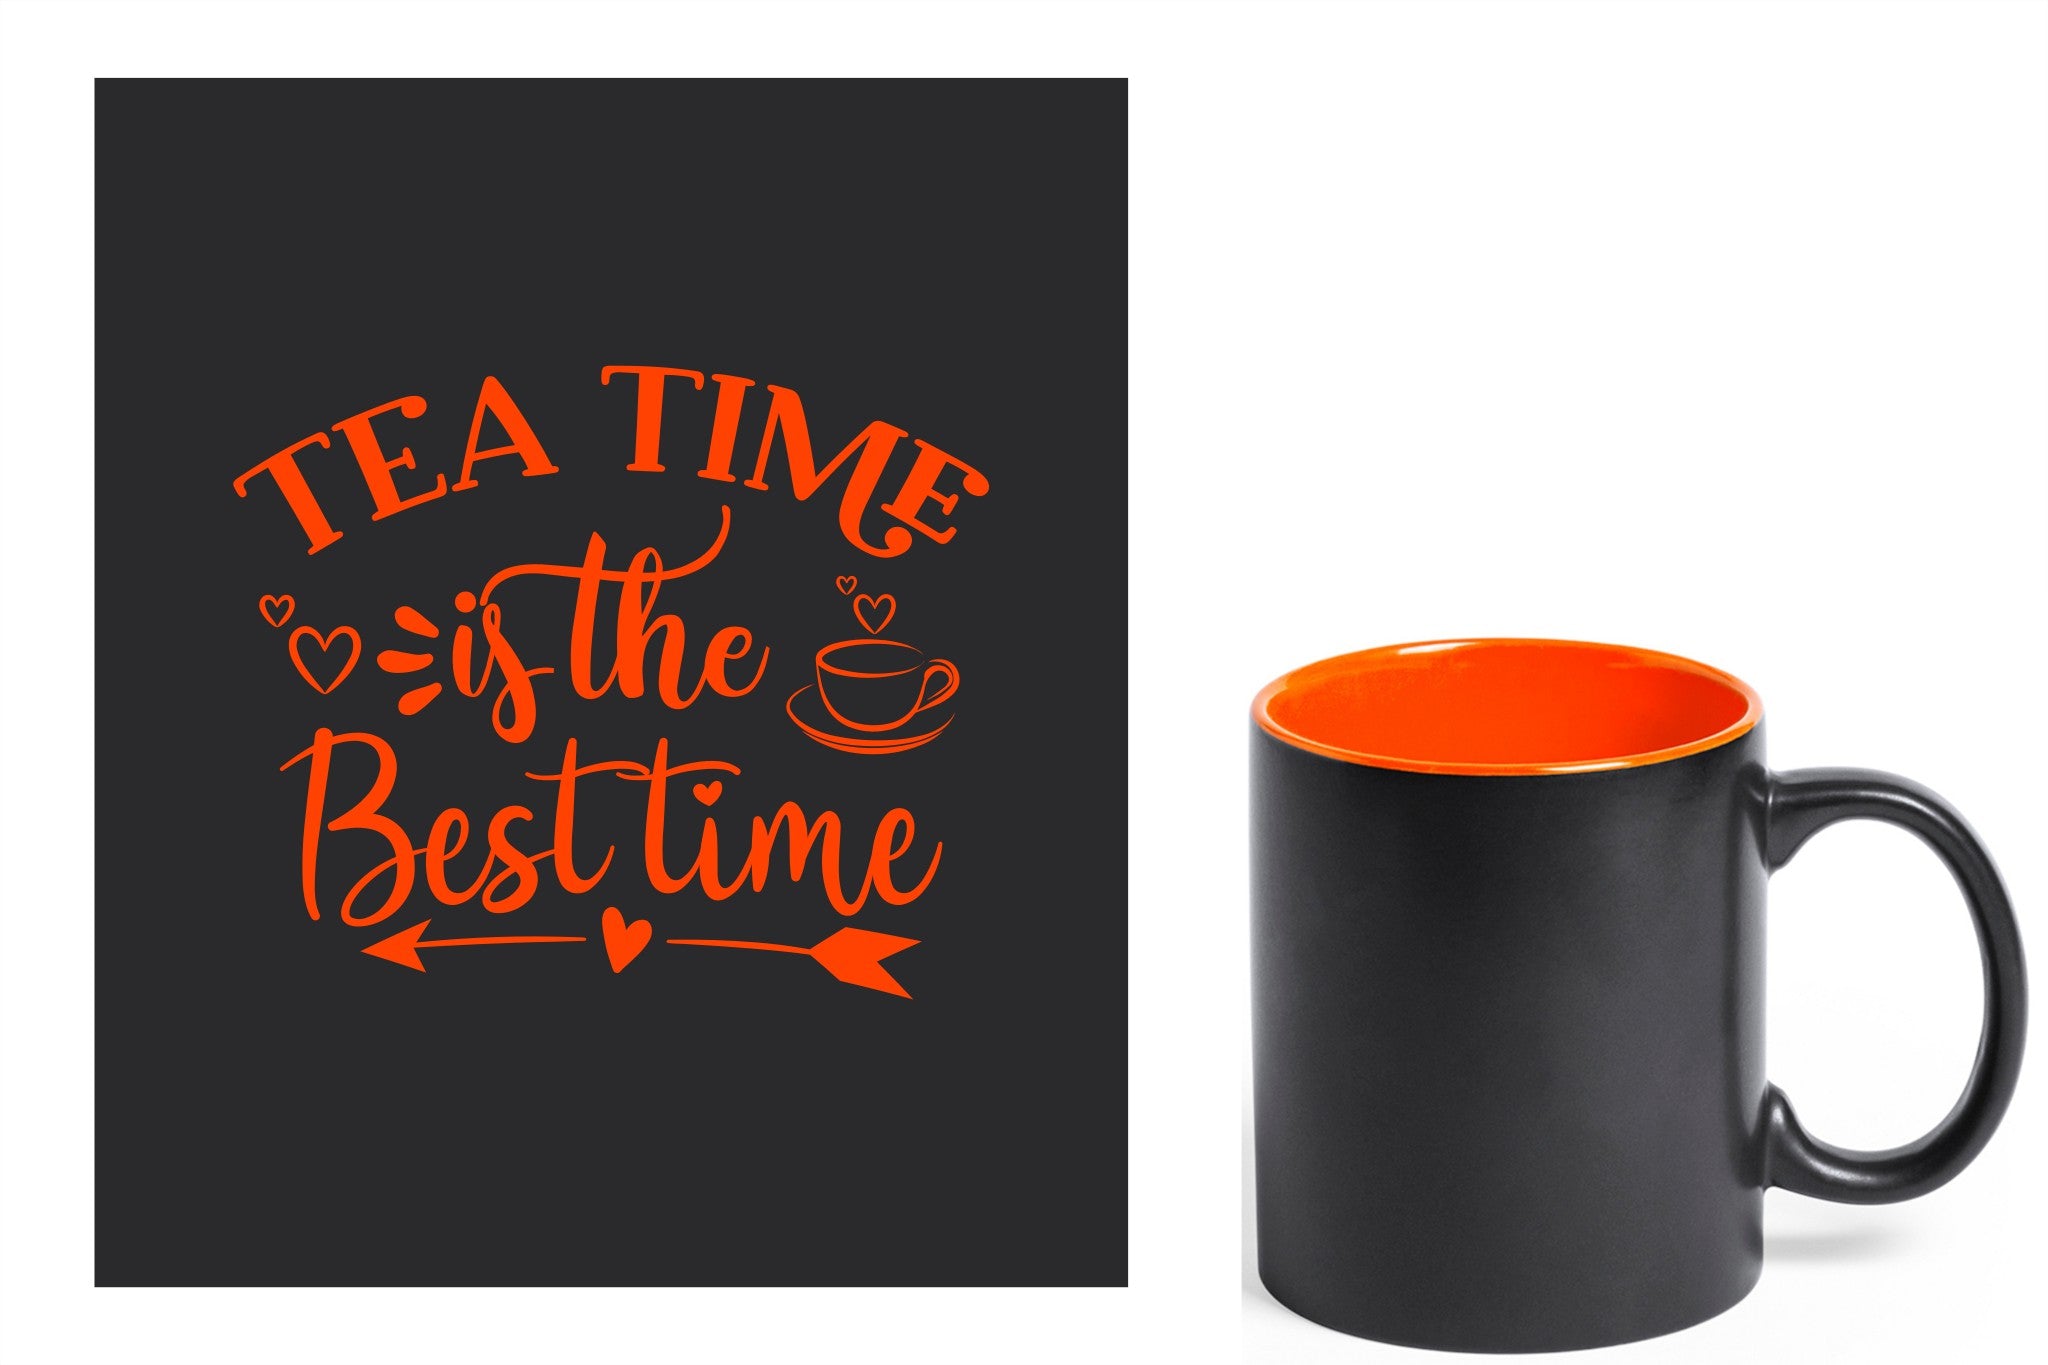 zwarte keramische mok met oranje gravure  'Tea time is the best time'.